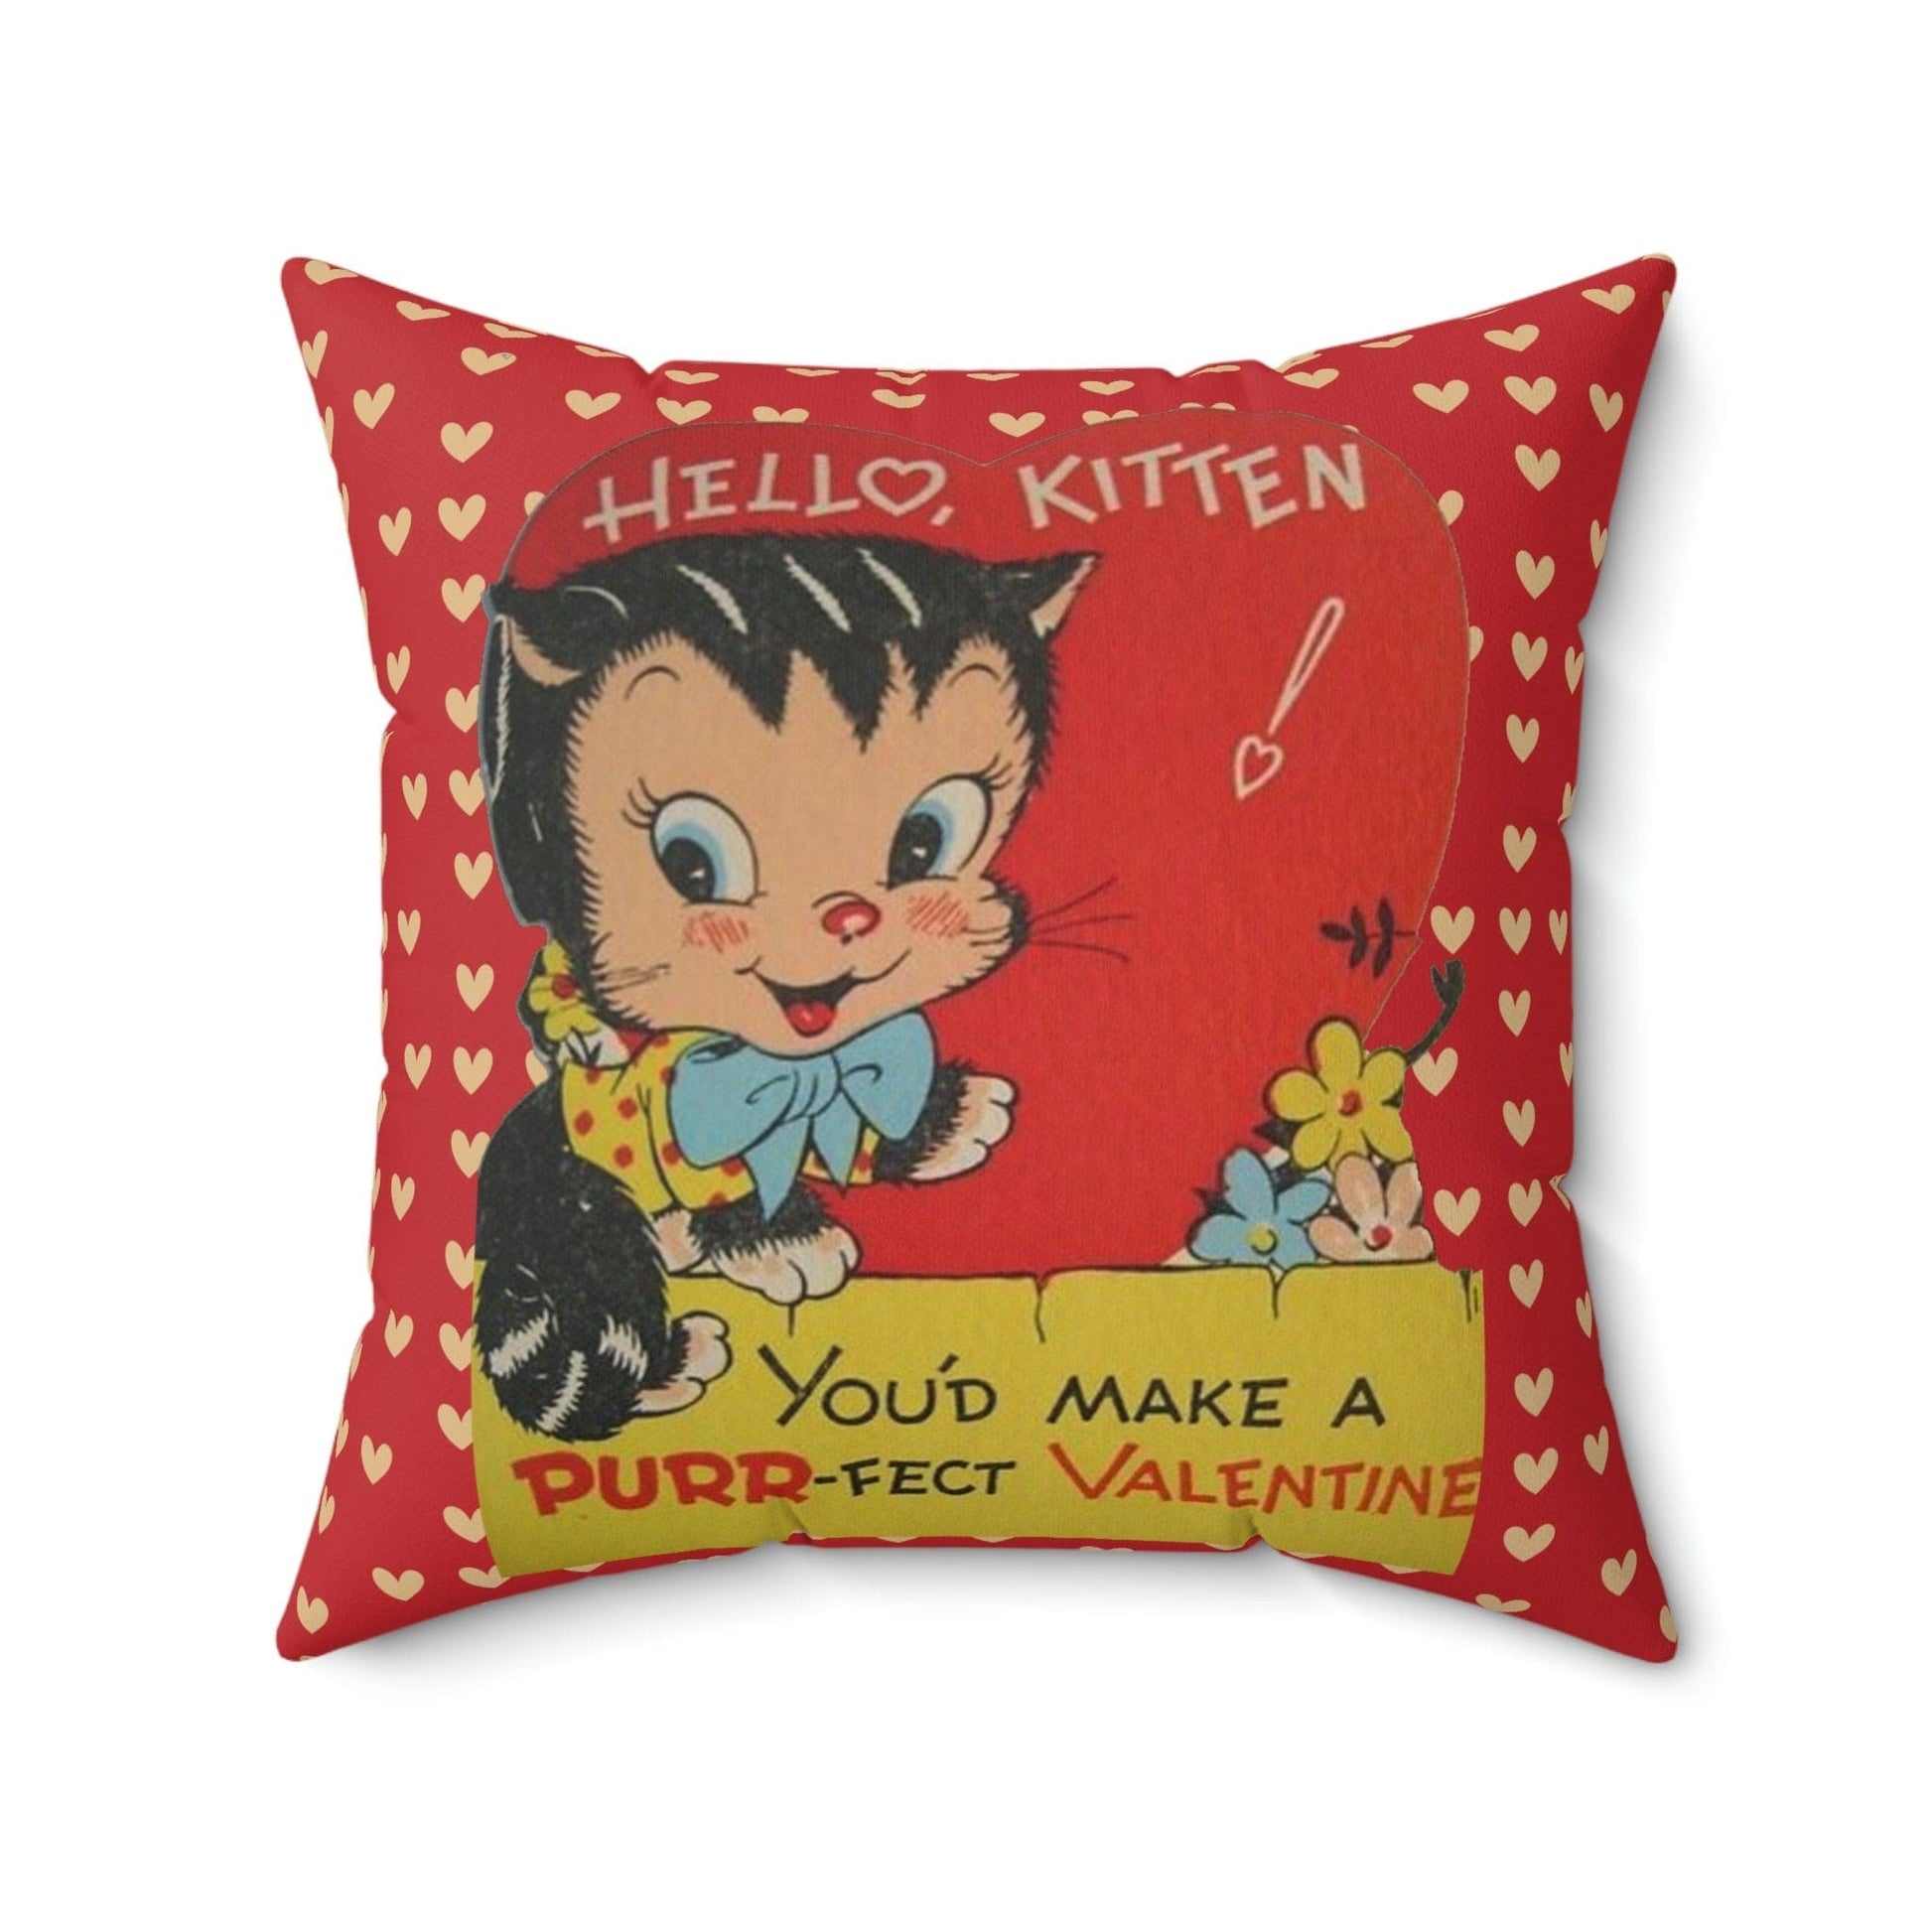 Kate McEnroe New York Vintage Retro Kitschy Kitty Valentine Throw Pillow Cover Throw Pillow Covers